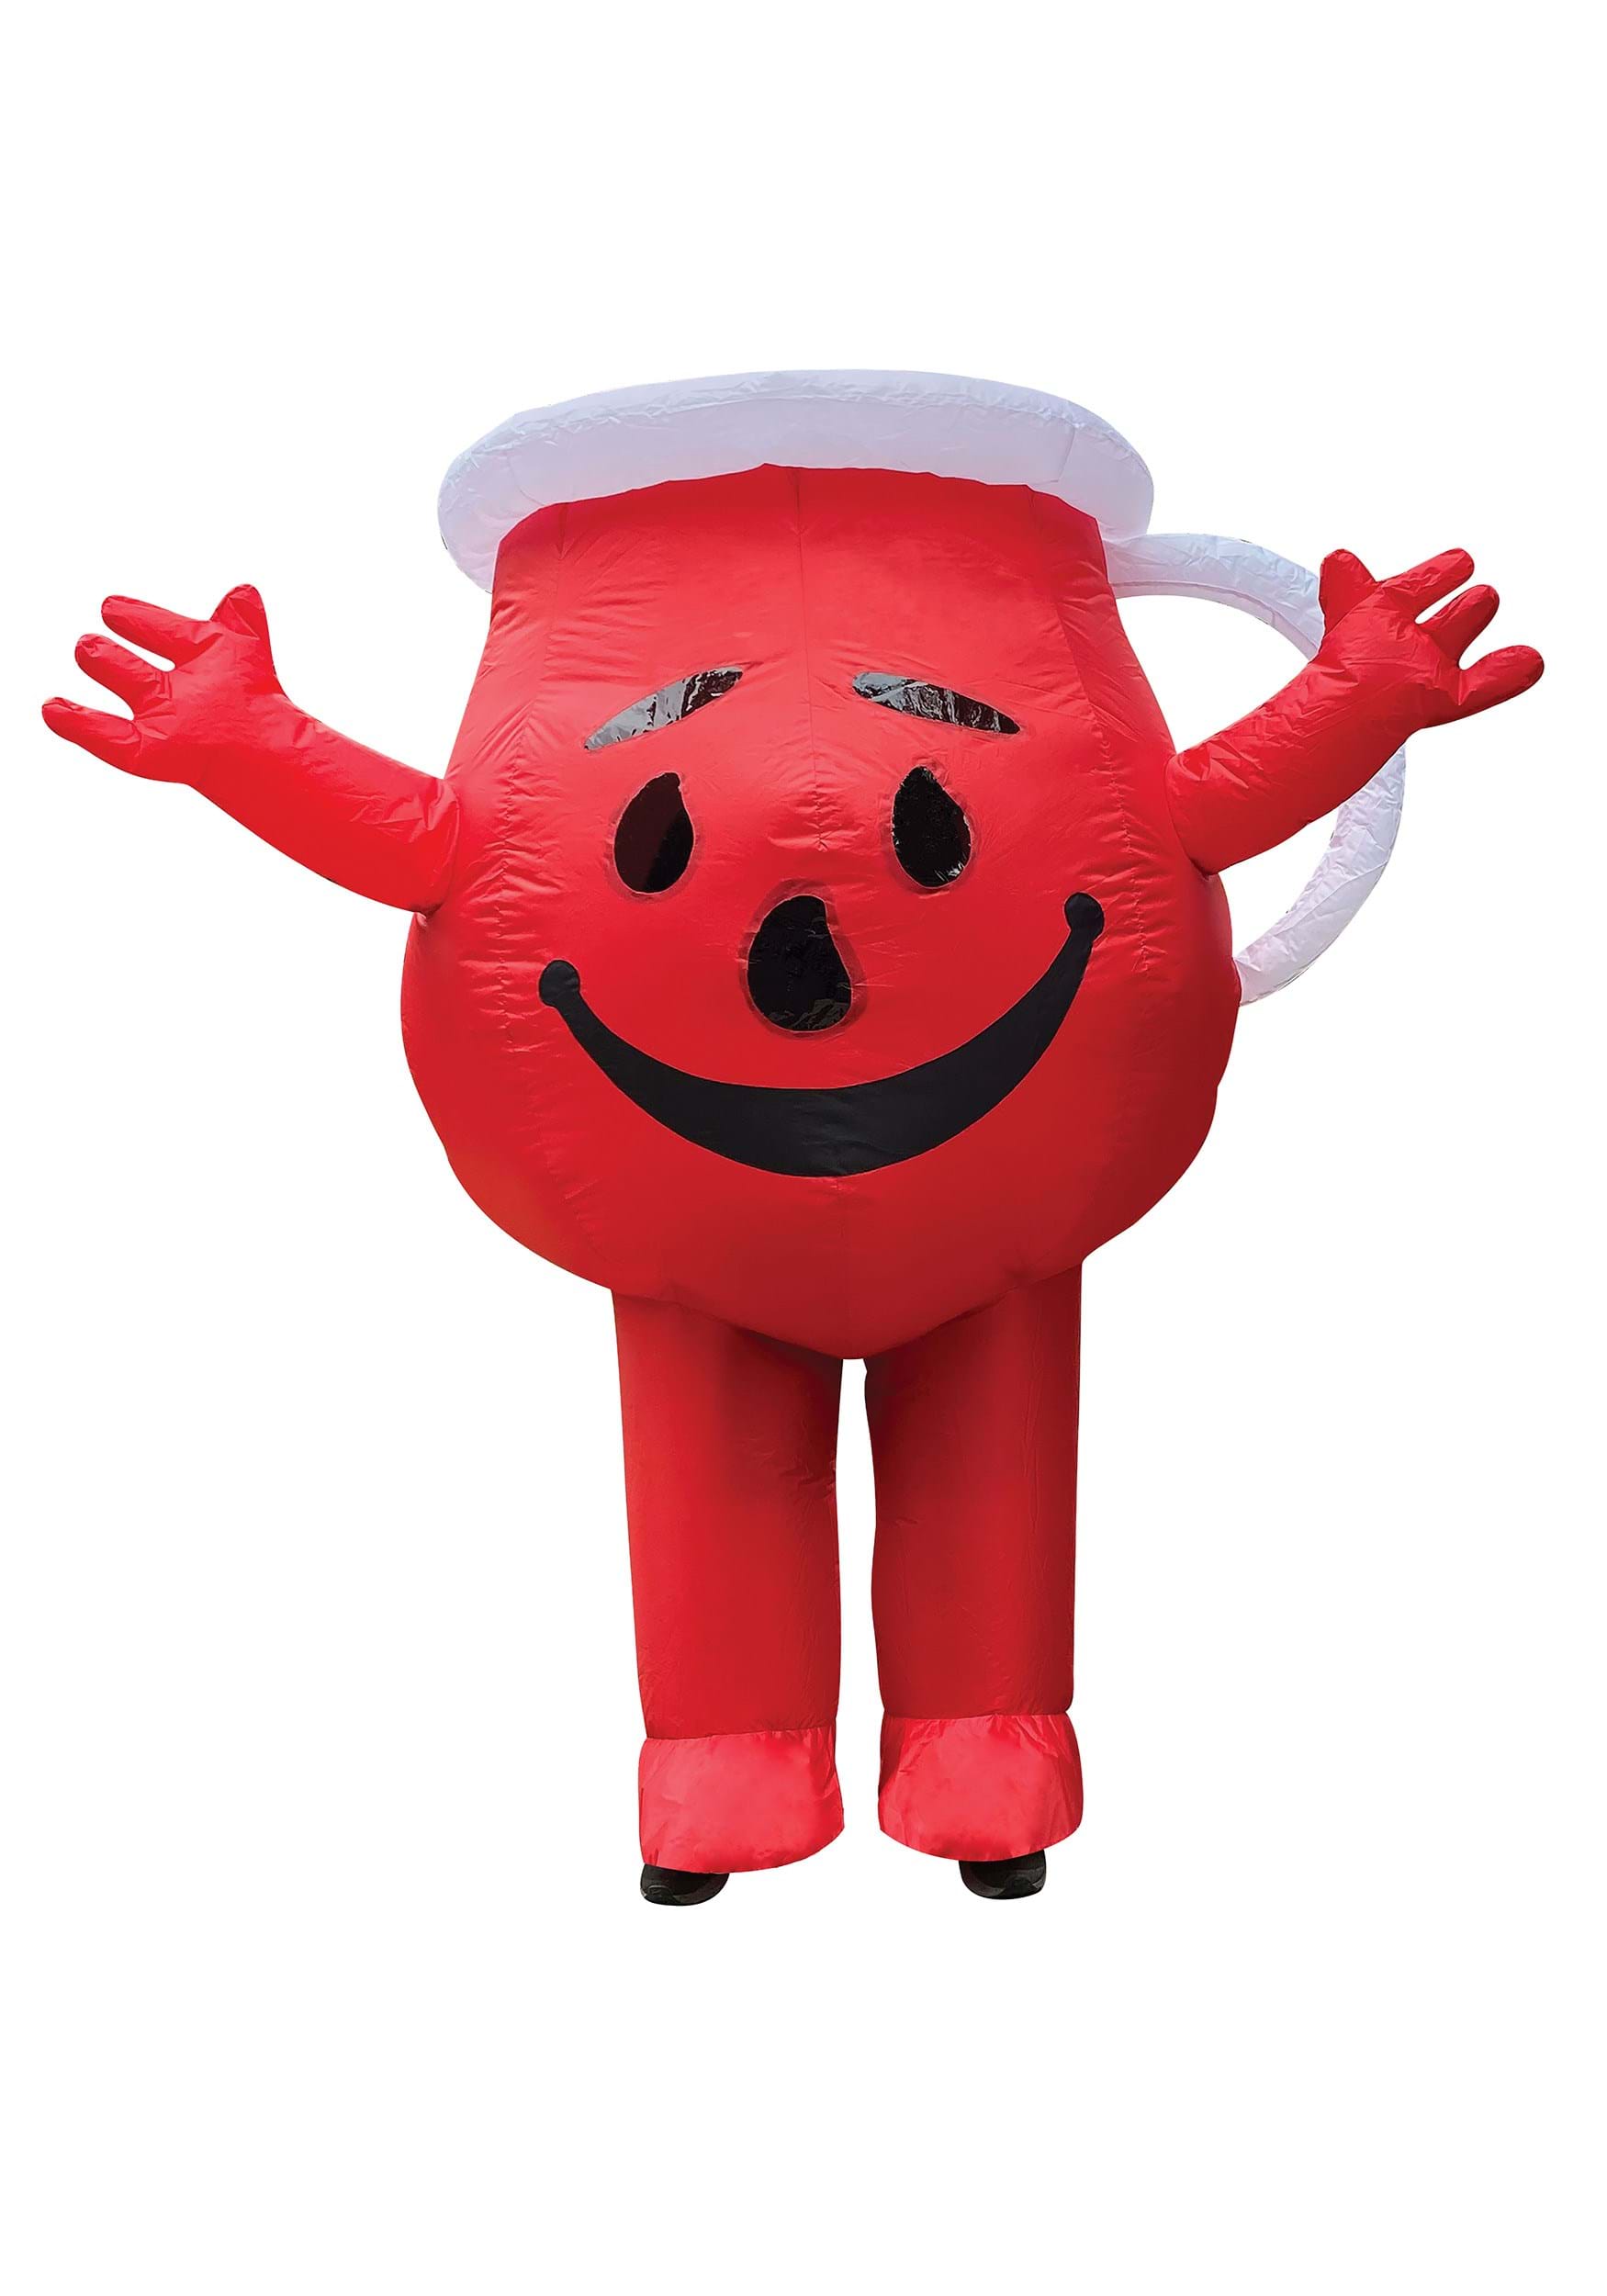 Adult Kool-Aid Inflatable Costume